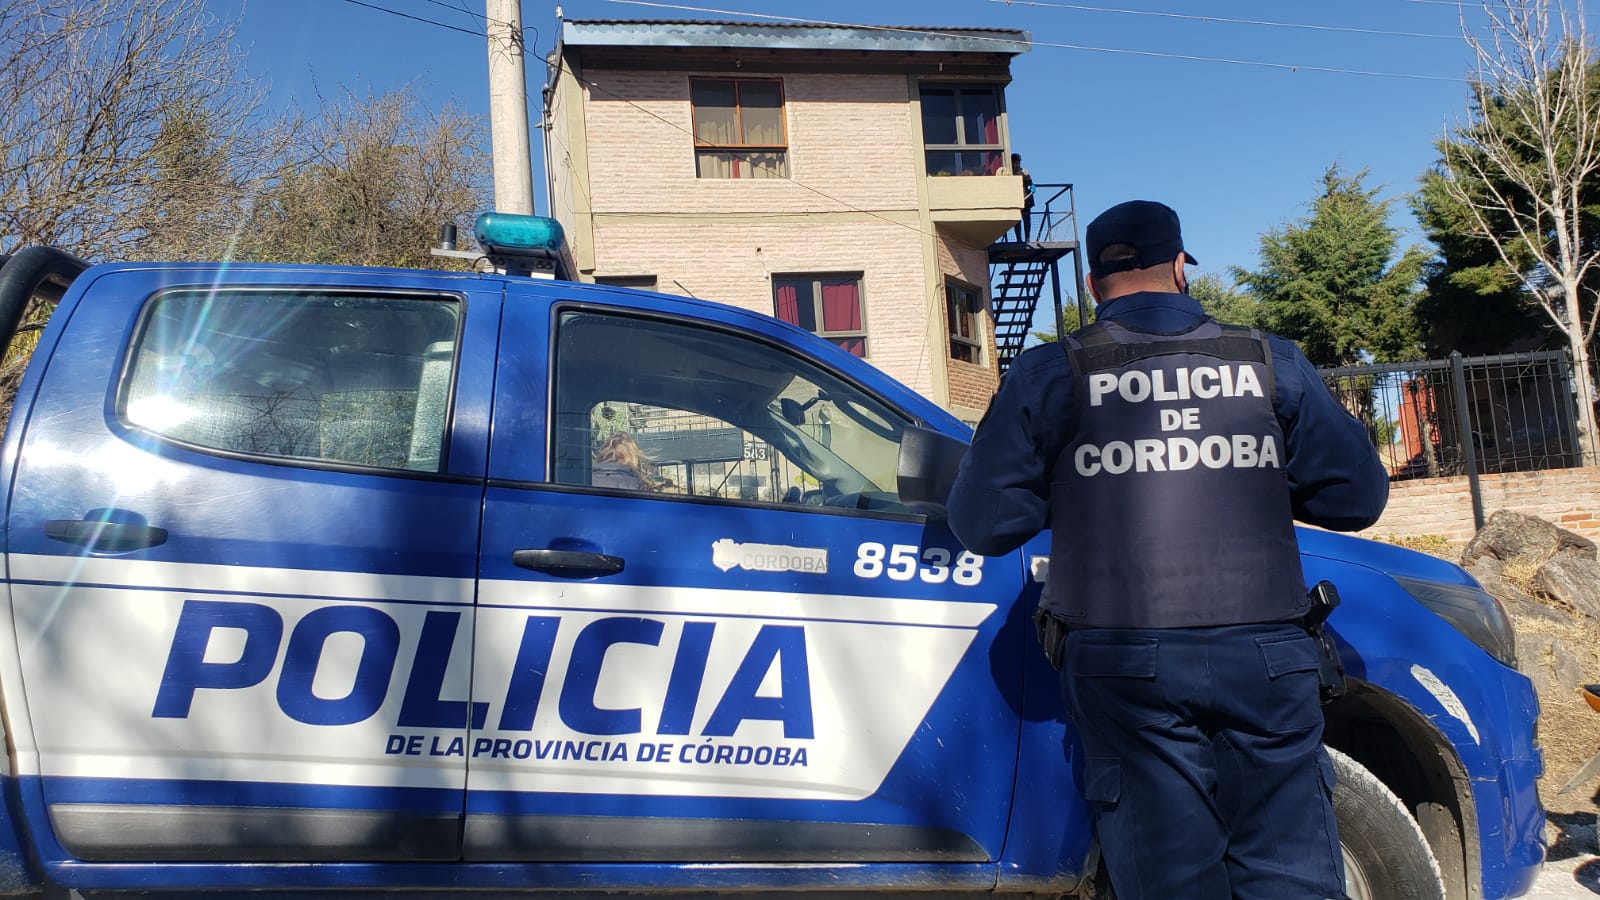 Los hechos de inseguridad, una constante para los vecinos de Córdoba.